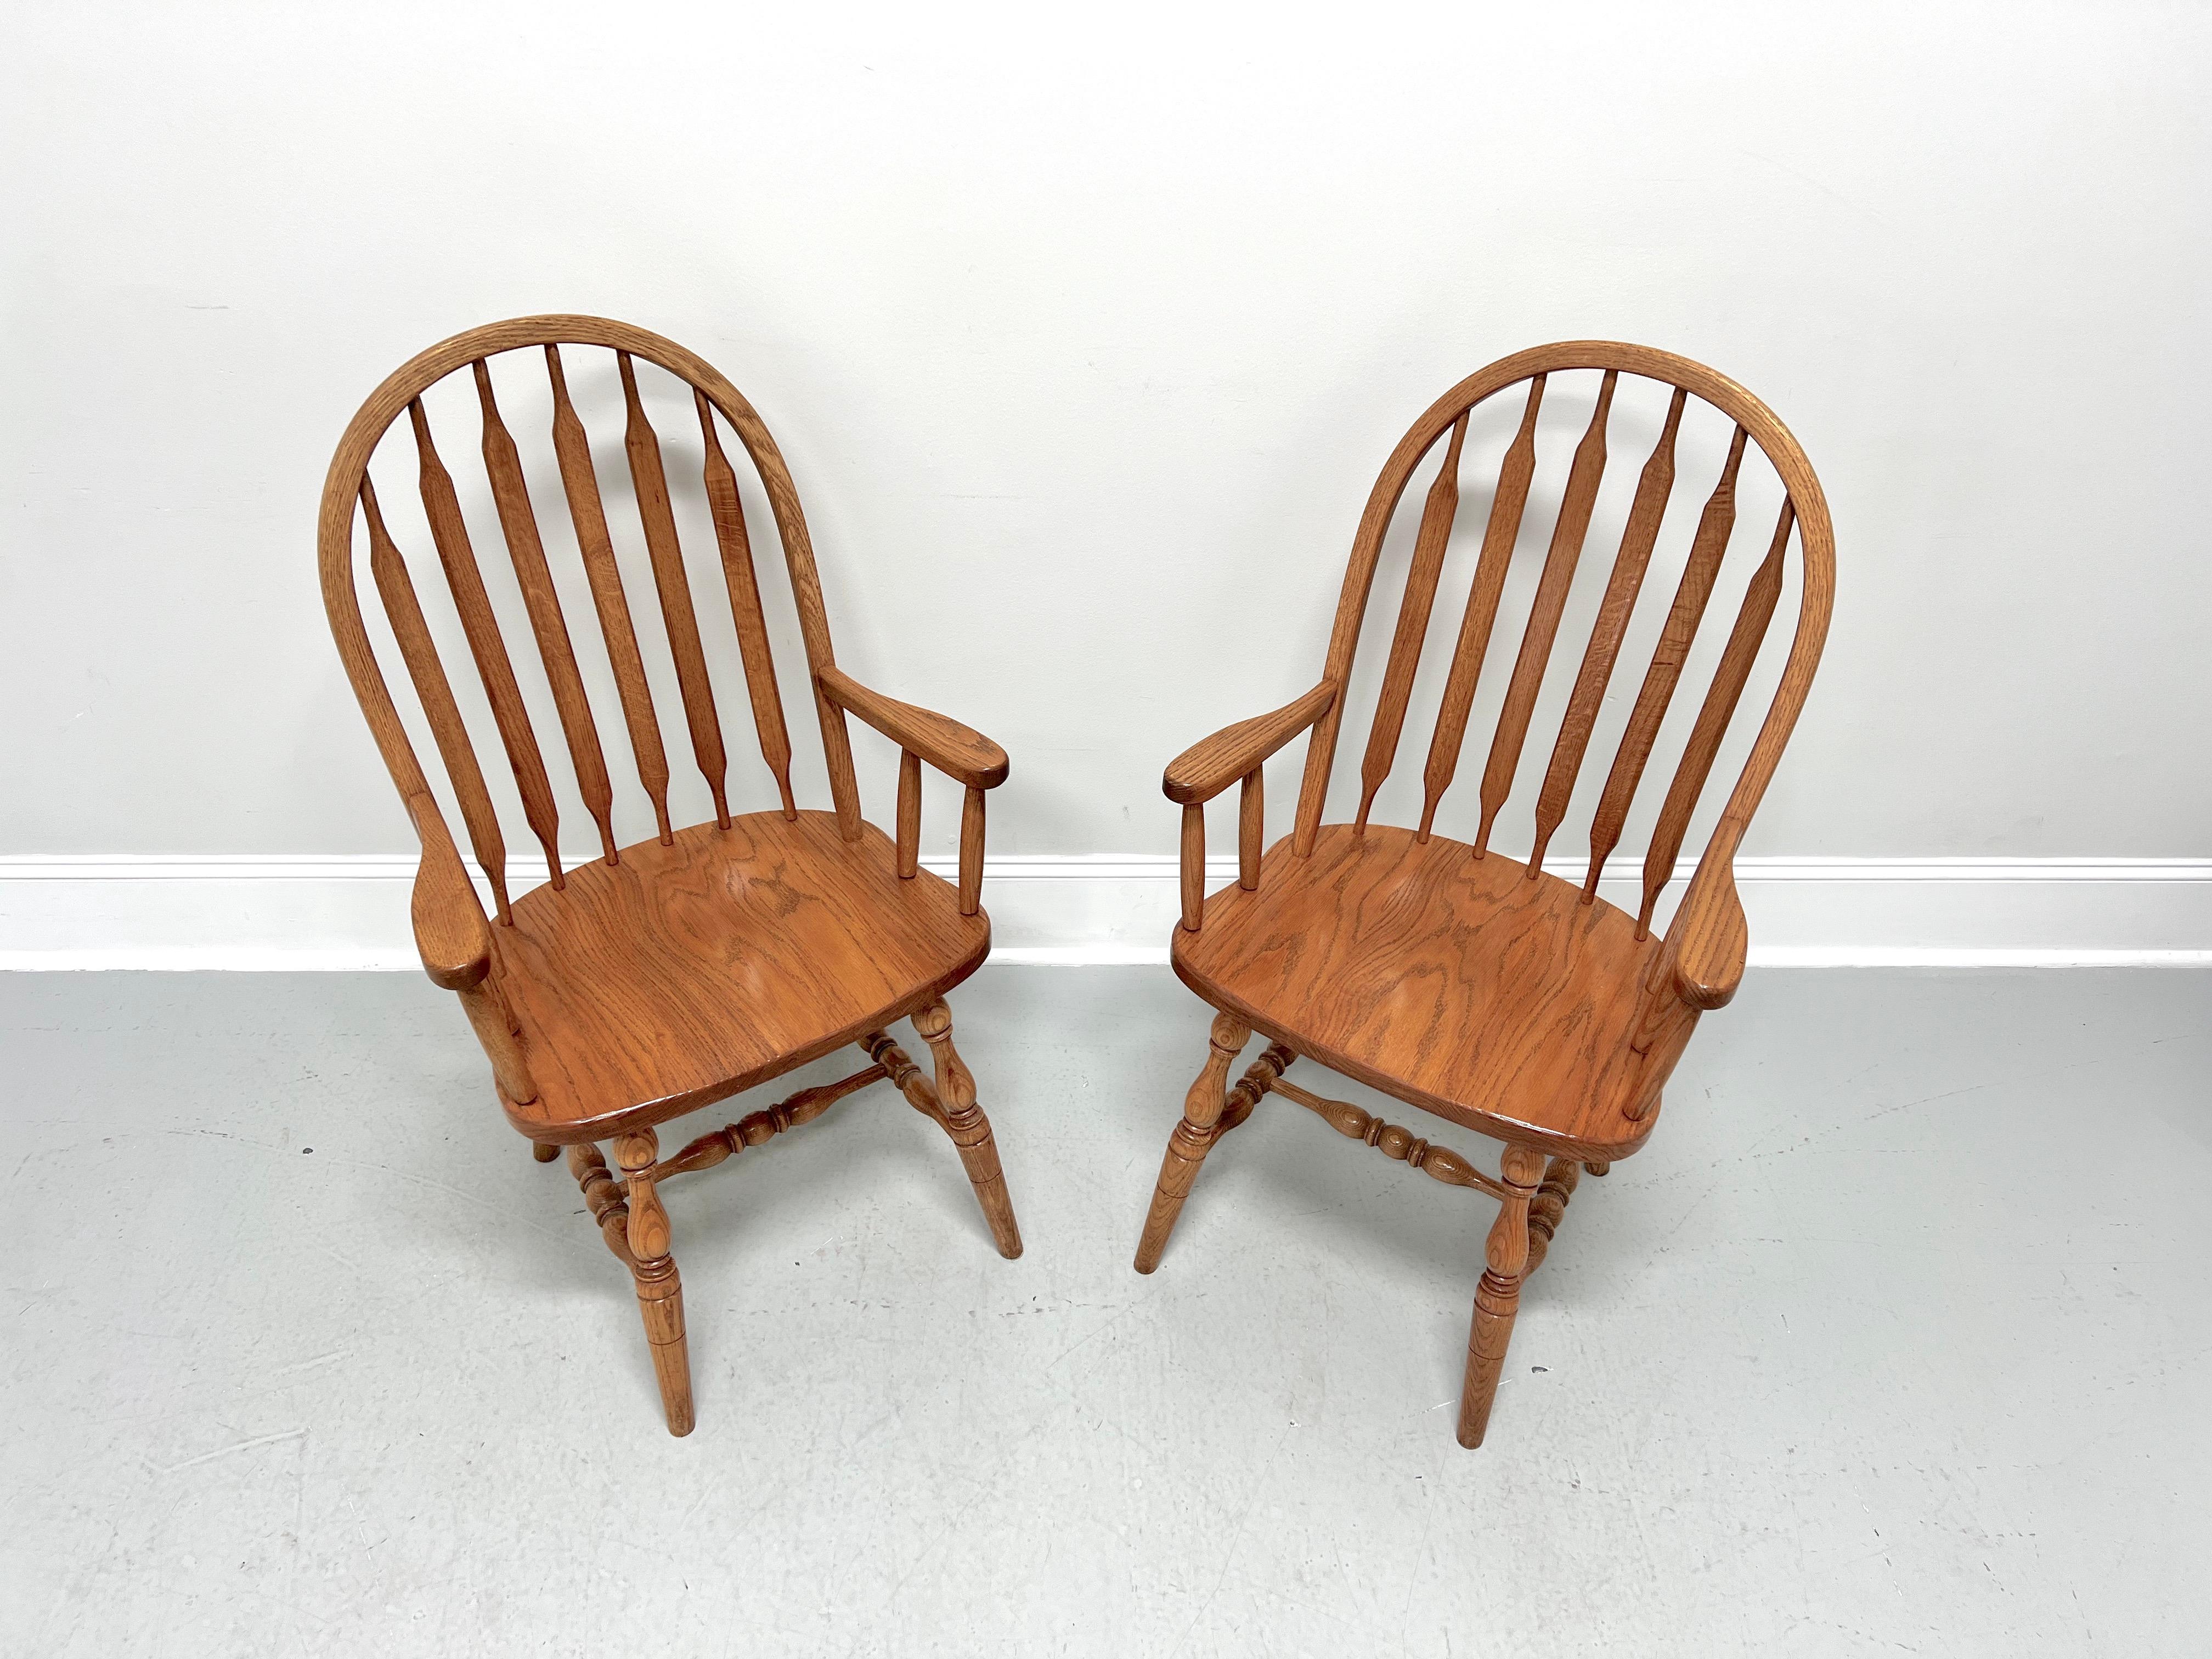 Paire de fauteuils de salle à manger Windsor de style Rockford, fabriqués à la main par des artisans Amish. Chêne massif, fuseaux en queue de chat, accoudoirs droits sculptés avec supports en fuseau, assise solide, pieds tournés et brancards